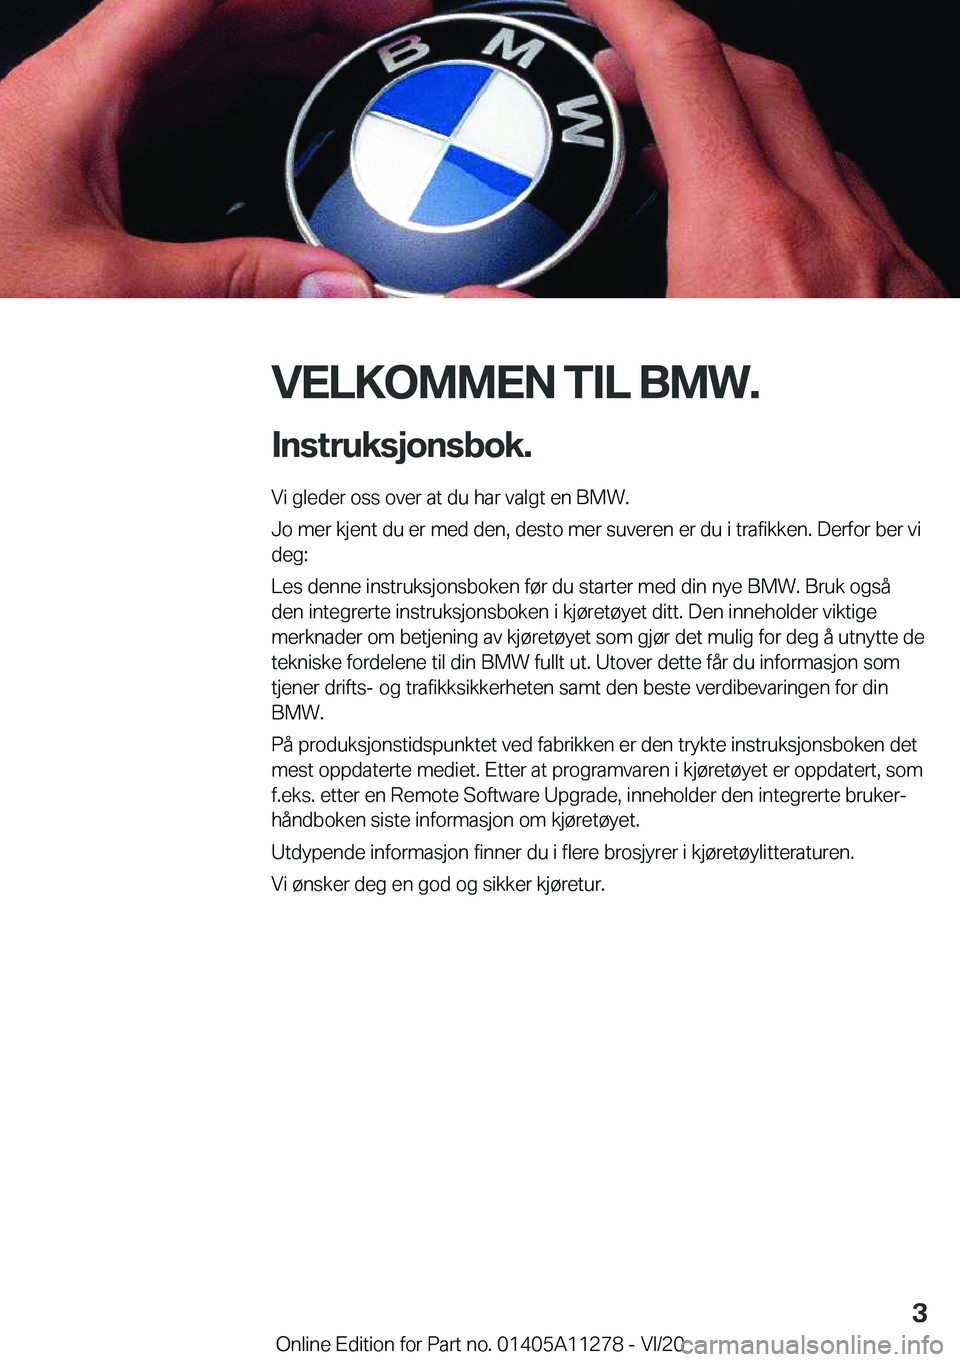 BMW 4 SERIES COUPE 2021  InstruksjonsbØker (in Norwegian) �V�E�L�K�O�M�M�E�N��T�I�L��B�M�W�.�I�n�s�t�r�u�k�s�j�o�n�s�b�o�k�.
�V�i��g�l�e�d�e�r��o�s�s��o�v�e�r��a�t��d�u��h�a�r��v�a�l�g�t��e�n��B�M�W�.
�J�o��m�e�r��k�j�e�n�t��d�u��e�r��m�e�d�